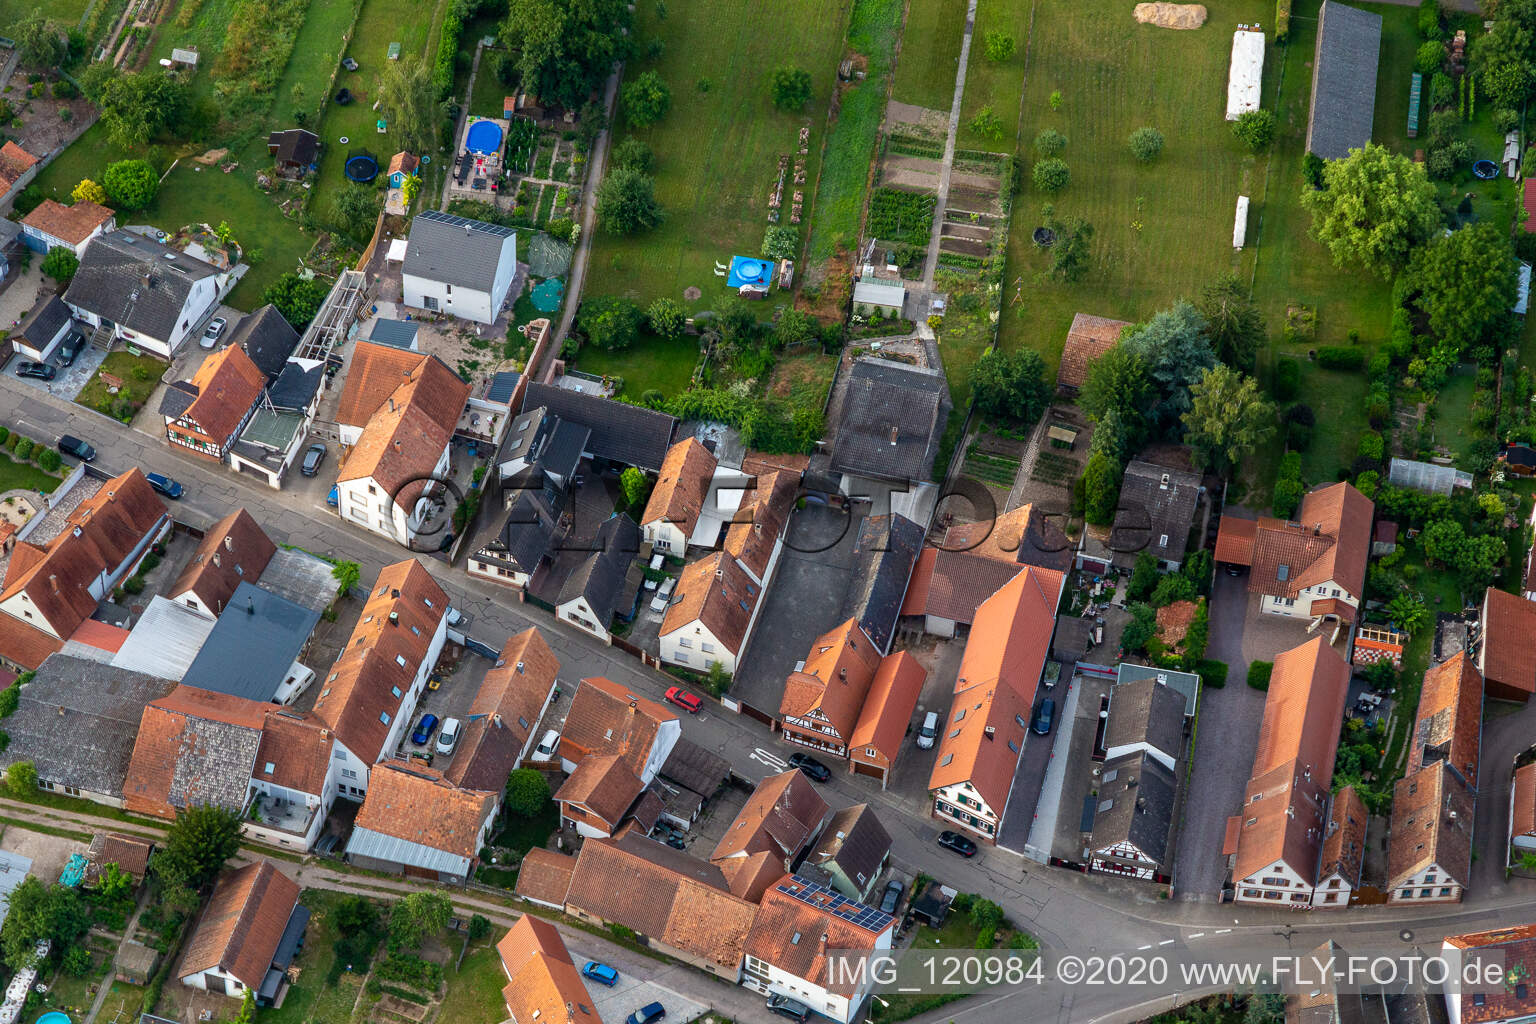 Luftbild von Gänsried in Freckenfeld im Bundesland Rheinland-Pfalz, Deutschland